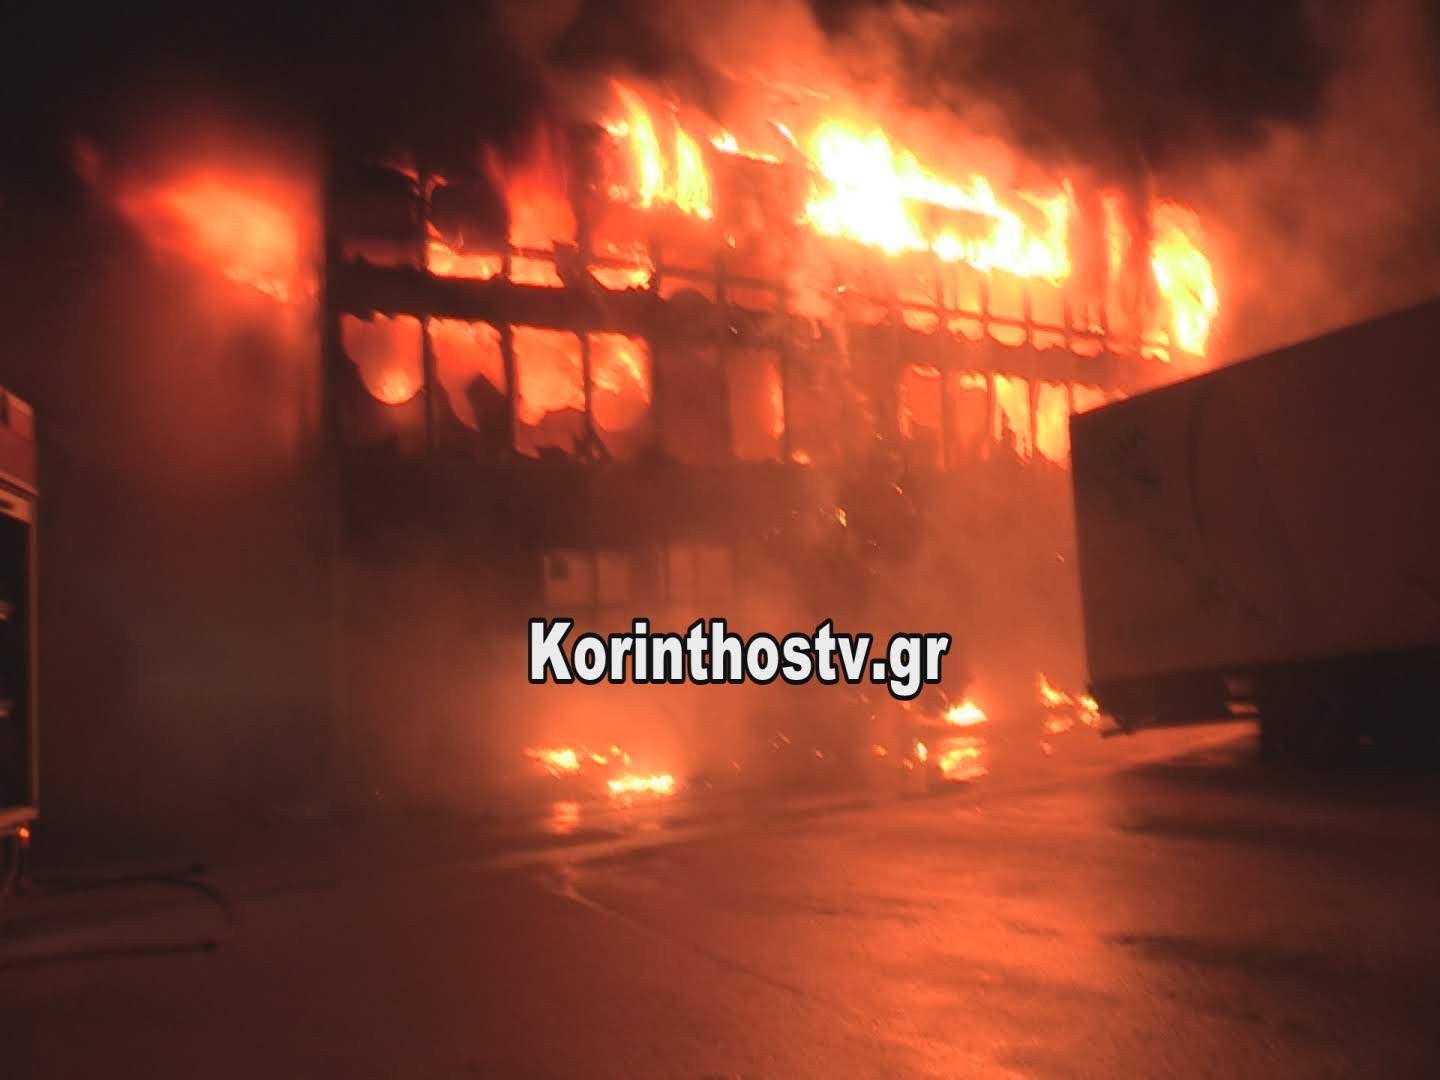 Ολική καταστροφή κτιρίου μεταφορικής από πυρκαγιά στην Κόρινθο [Βίντεο]